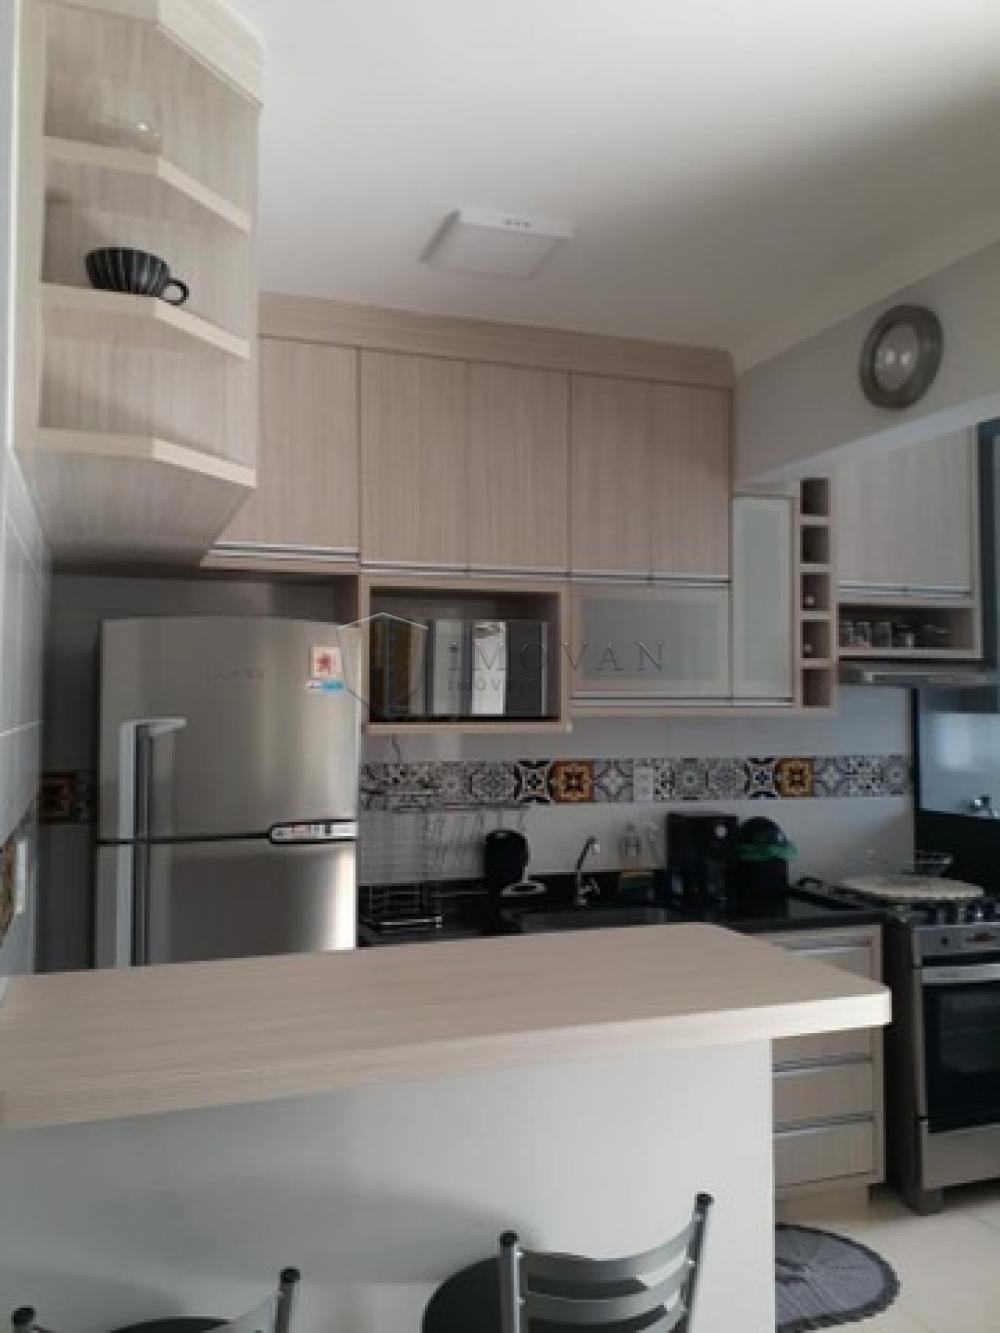 Comprar Apartamento / Padrão em Ribeirão Preto R$ 295.000,00 - Foto 14